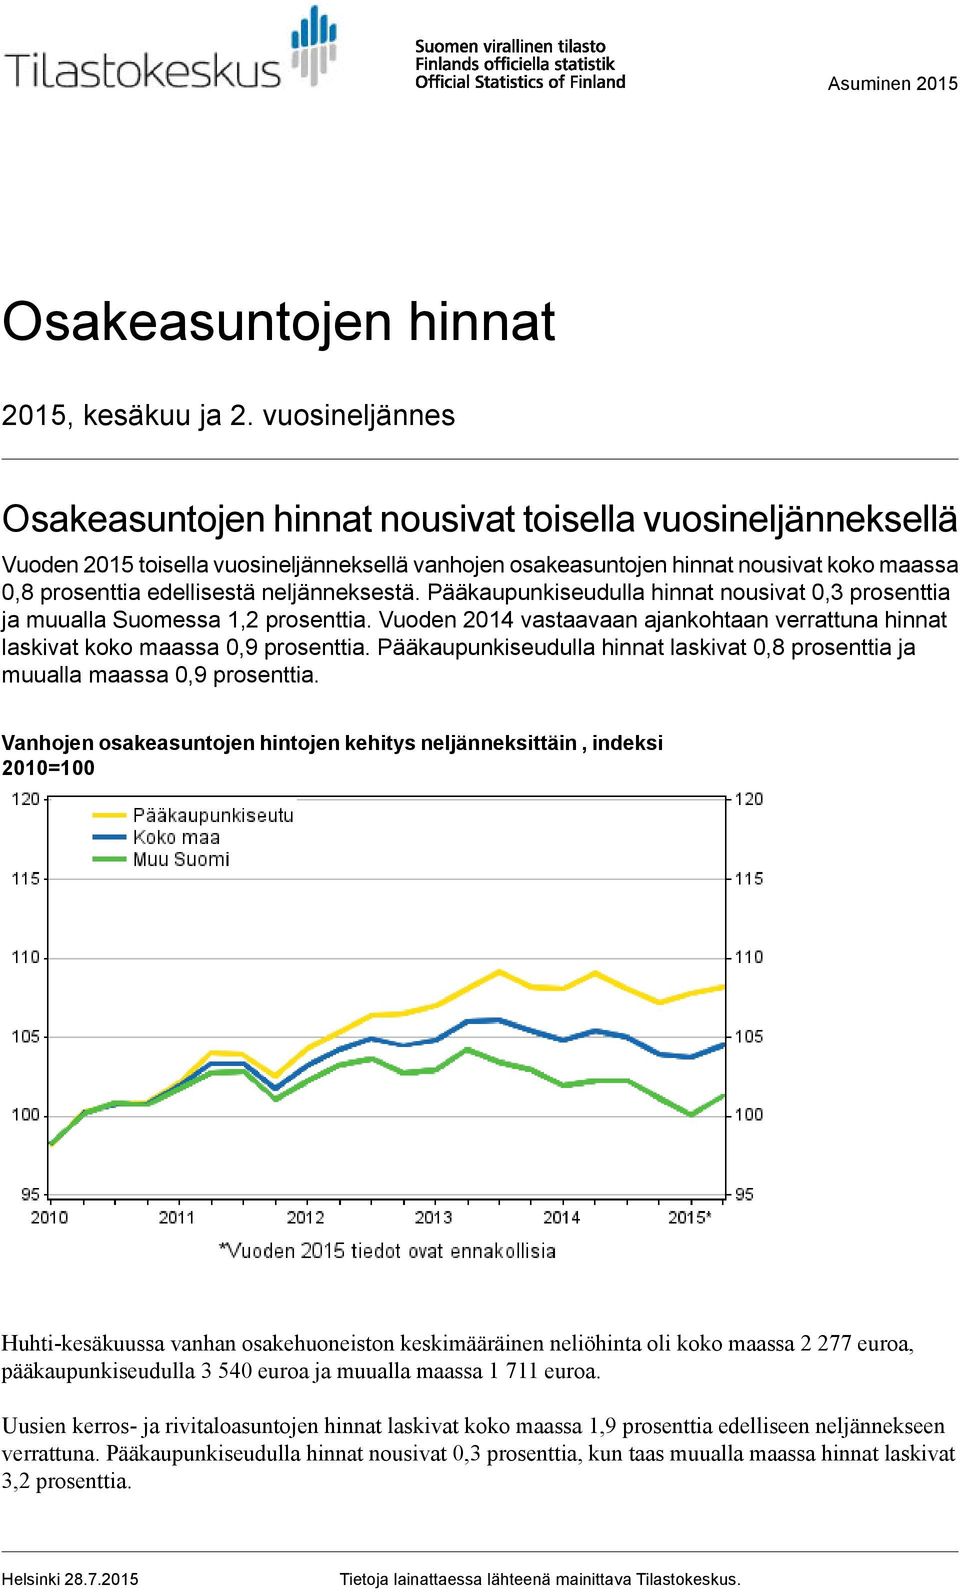 neljänneksestä. Pääkaupunkiseudulla hinnat nousivat prosenttia ja muualla Suomessa 1,2 prosenttia. Vuoden 2014 vastaavaan ajankohtaan verrattuna hinnat laskivat koko maassa prosenttia.